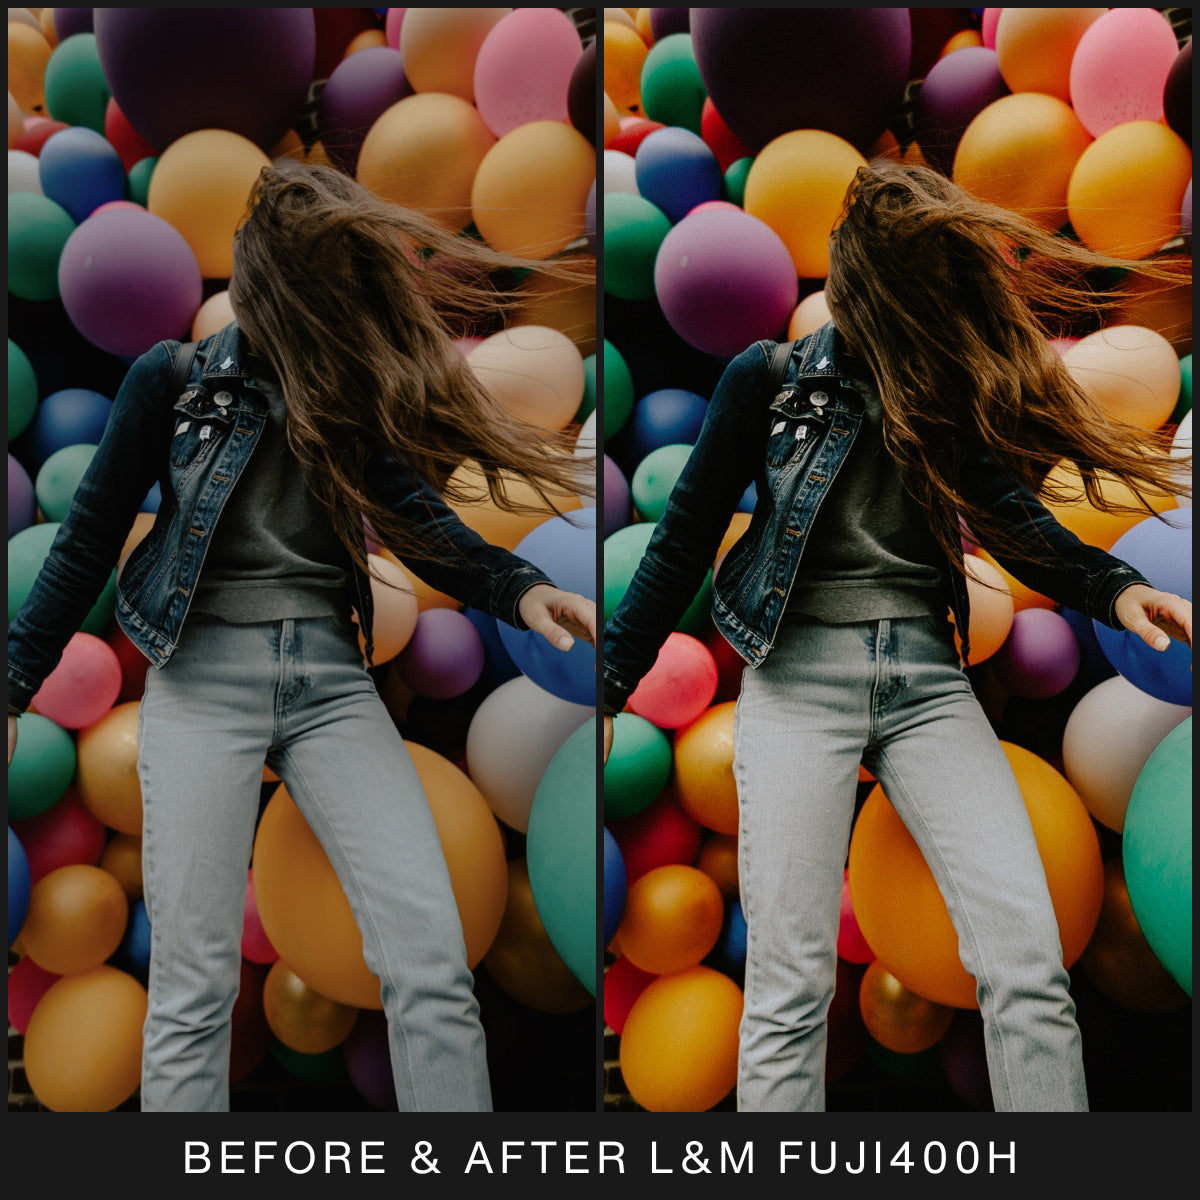  FujiFilm Film Filter Lightroom Presets For Adobe Lightroom Mobile & Desktop By Lou And Marks Presets Contrast